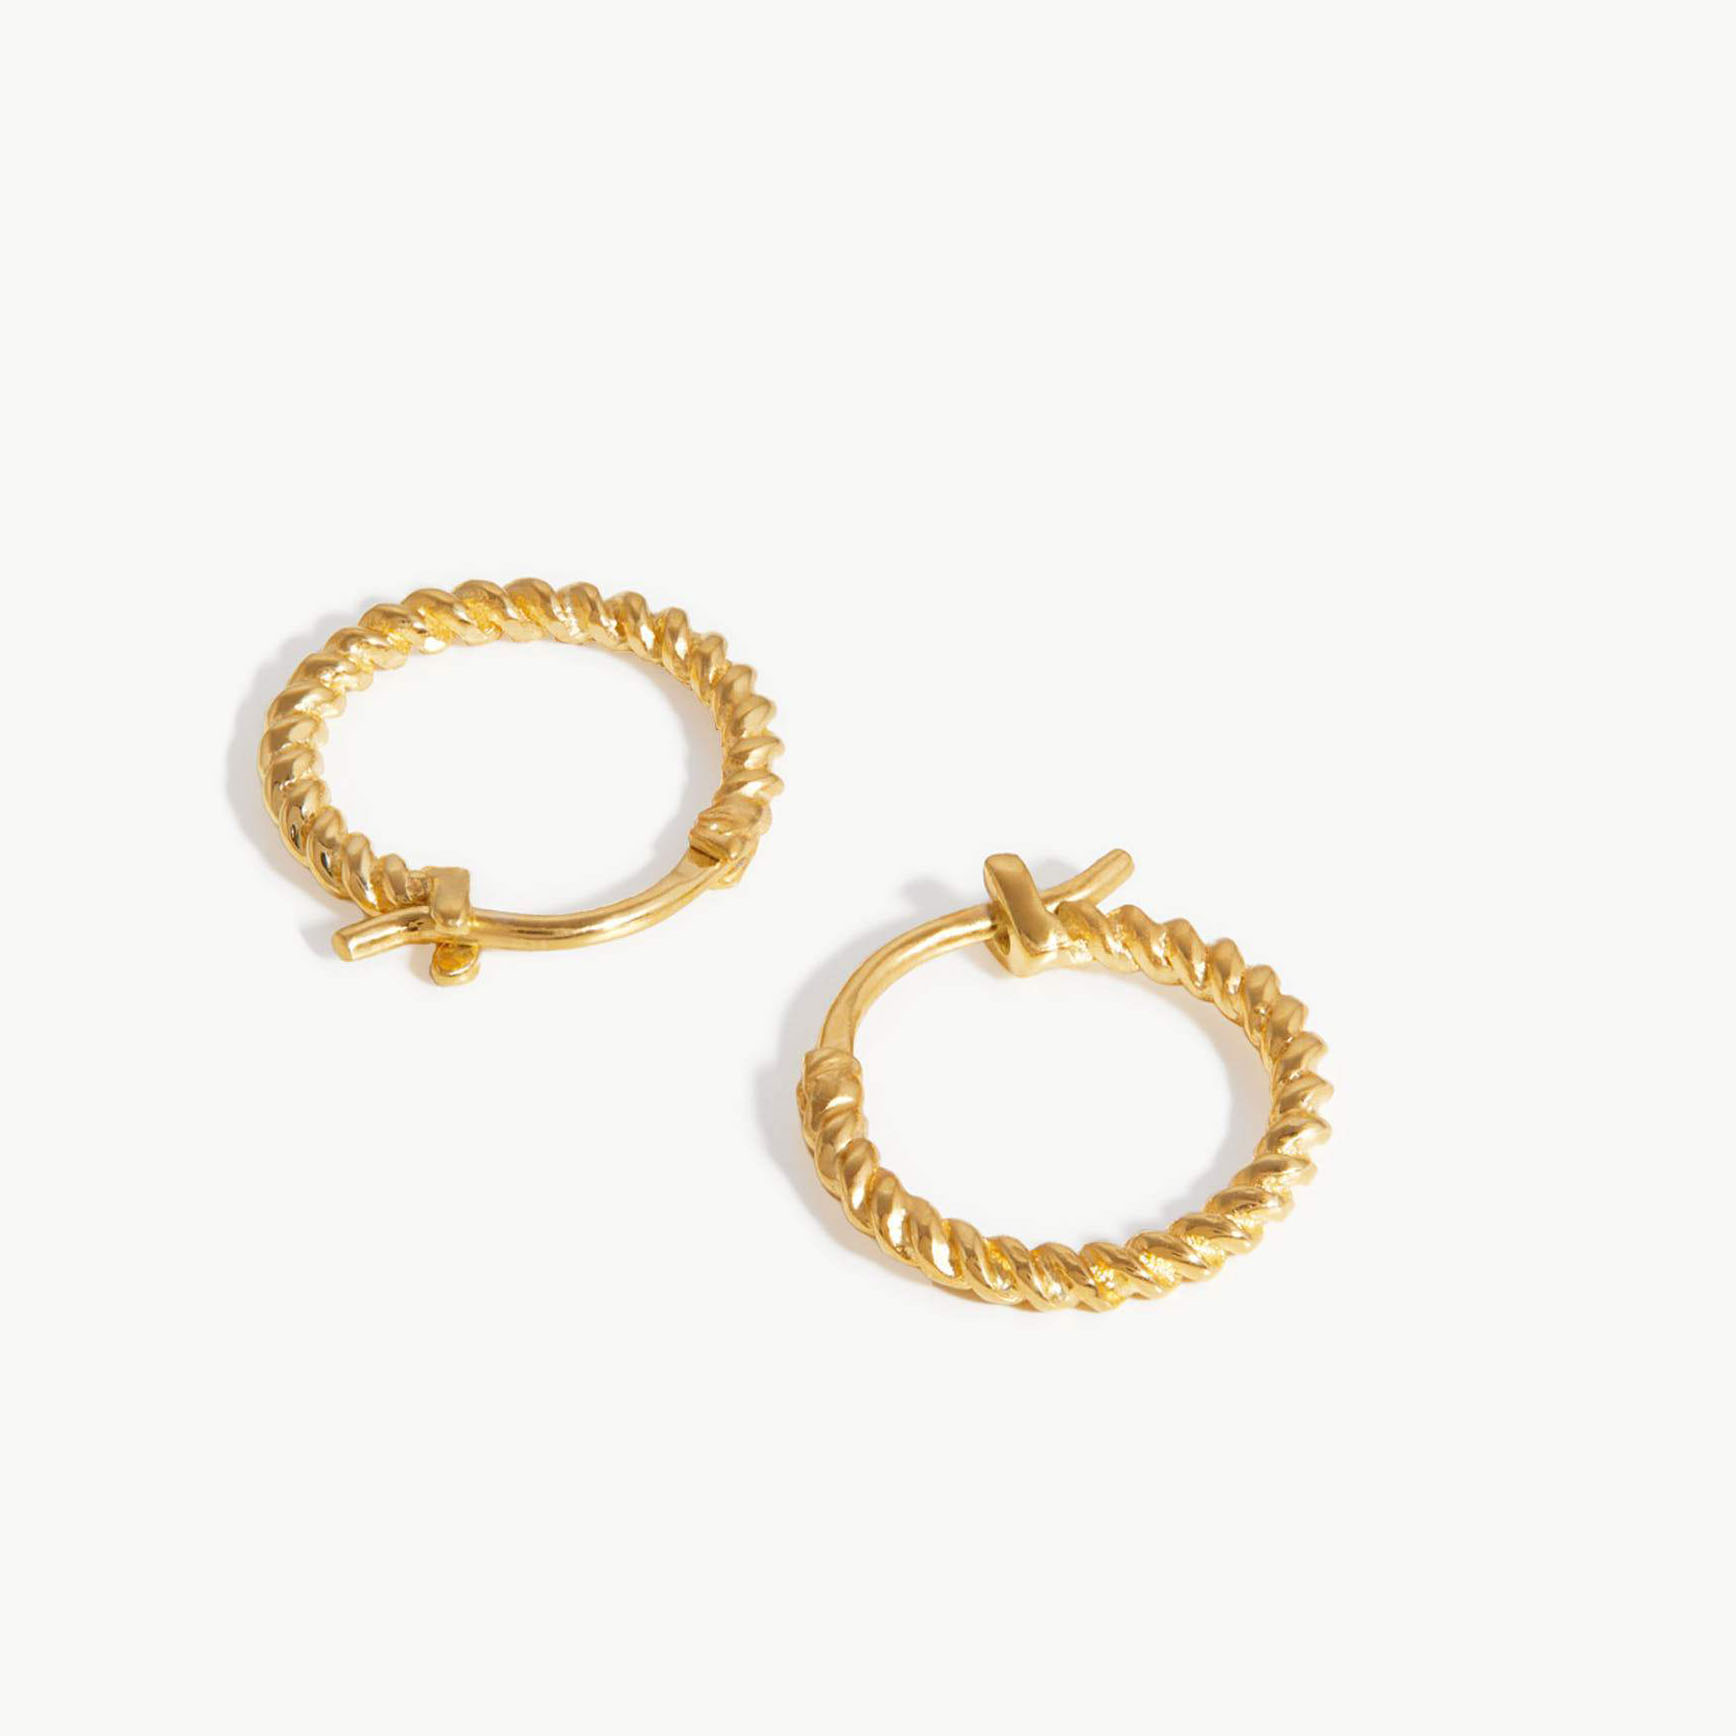 производитель ювелирных изделий индивидуального дизайна OEM ODM мини спиральные серьги-кольца из 18-каратного золота с покрытием